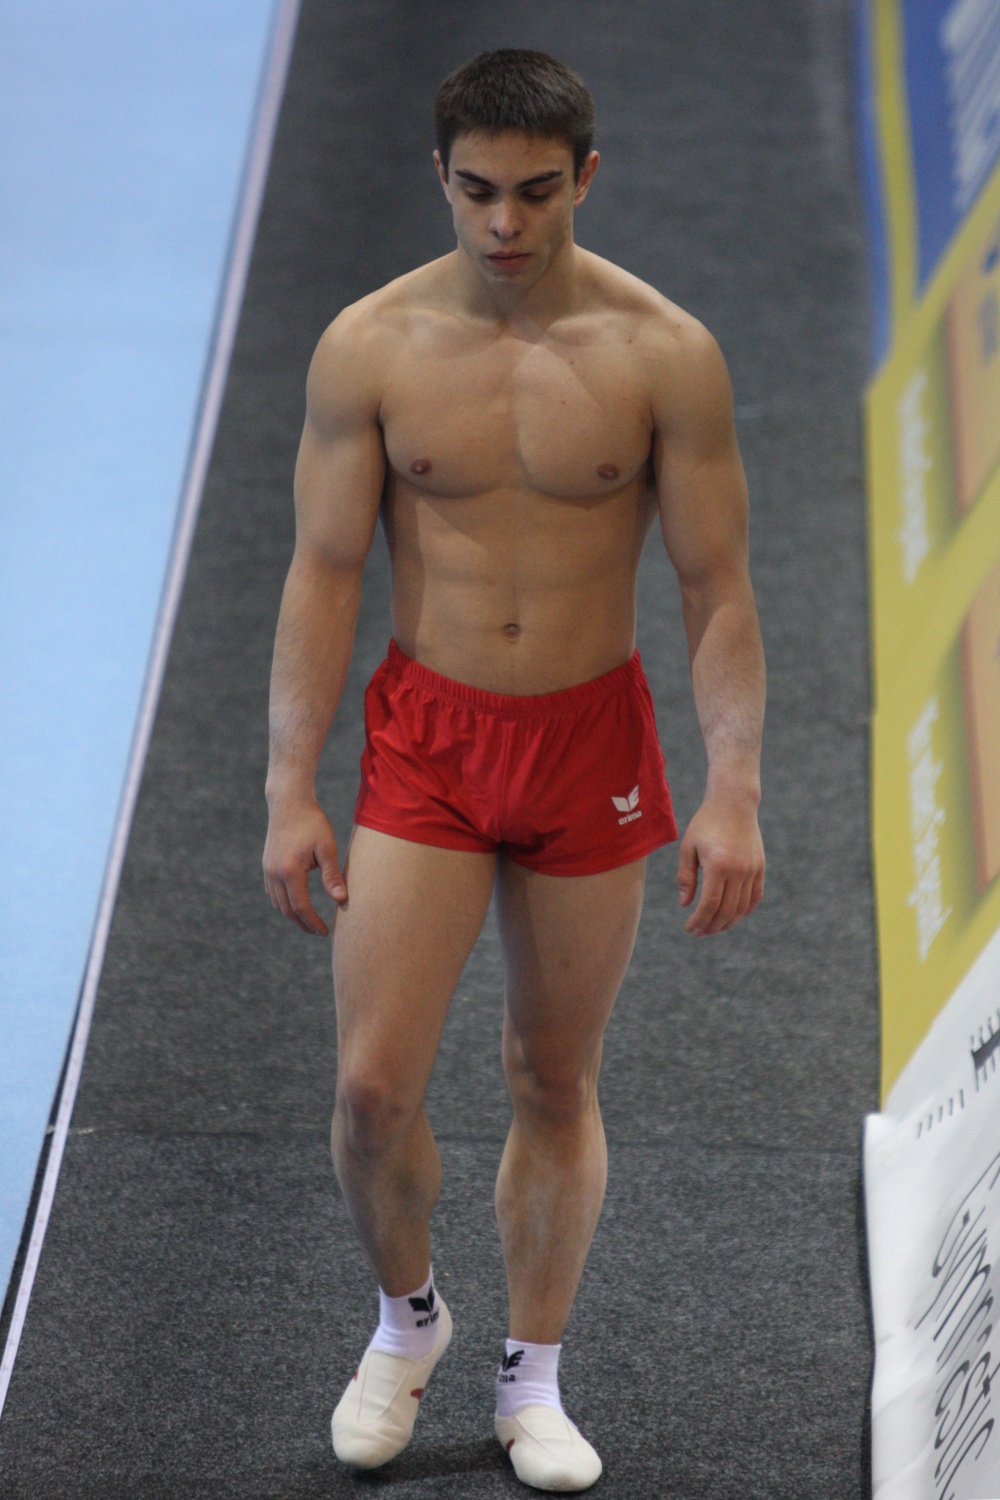 Asian sporty guy naked